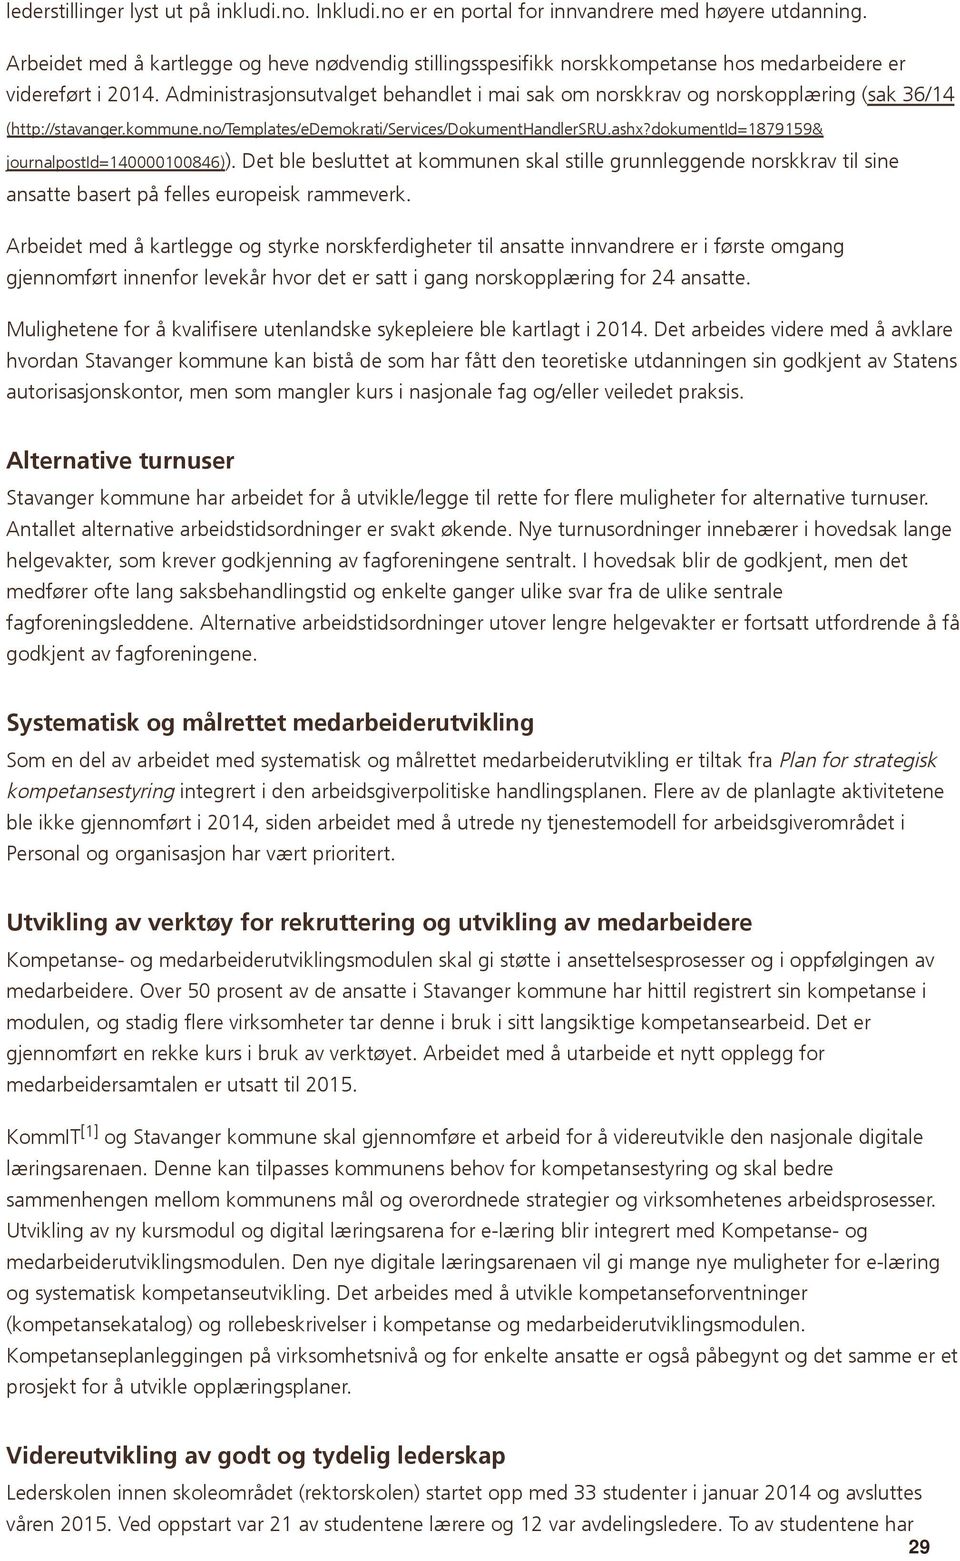 Administrasjonsutvalget behandlet i mai sak om norskkrav og norskopplæring (sak 36/14 (http://stavanger.kommune.no/templates/edemokrati/services/dokumenthandlersru.ashx?